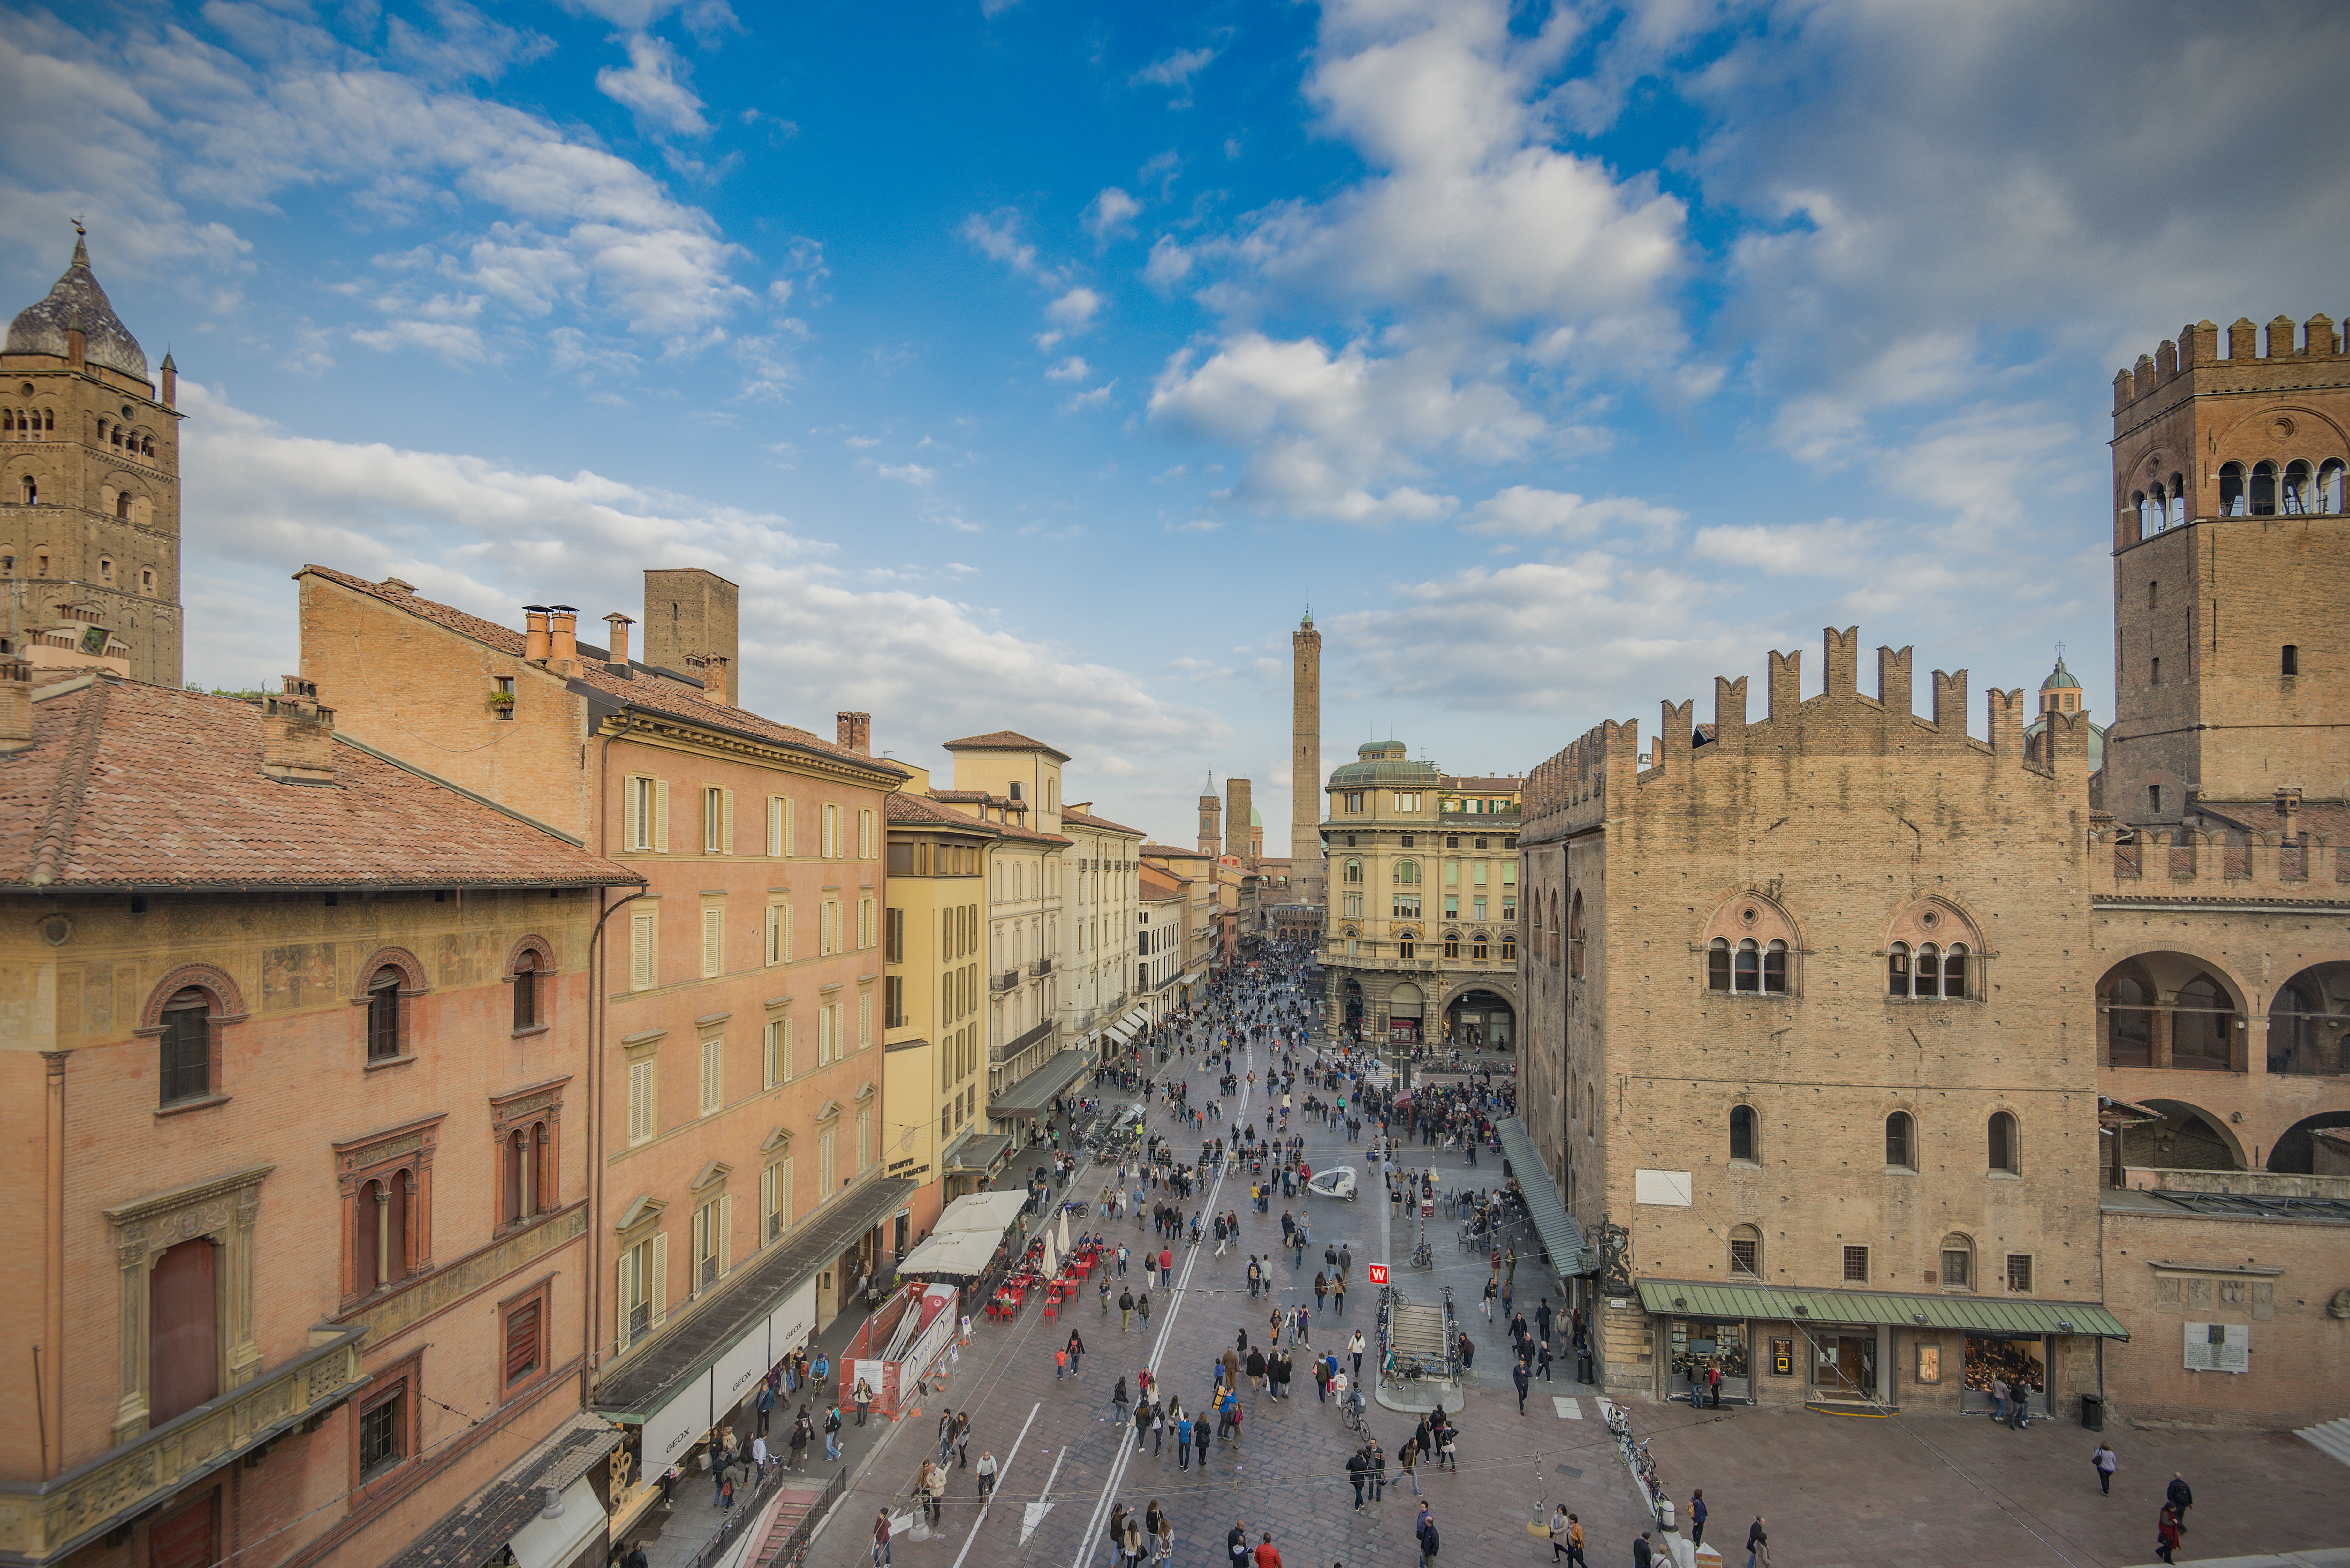 Bologna e i suoi simboli: Piazza Maggiore, le due Torri, i portici, la Fontana del Nettuno, l’Archiginnasio